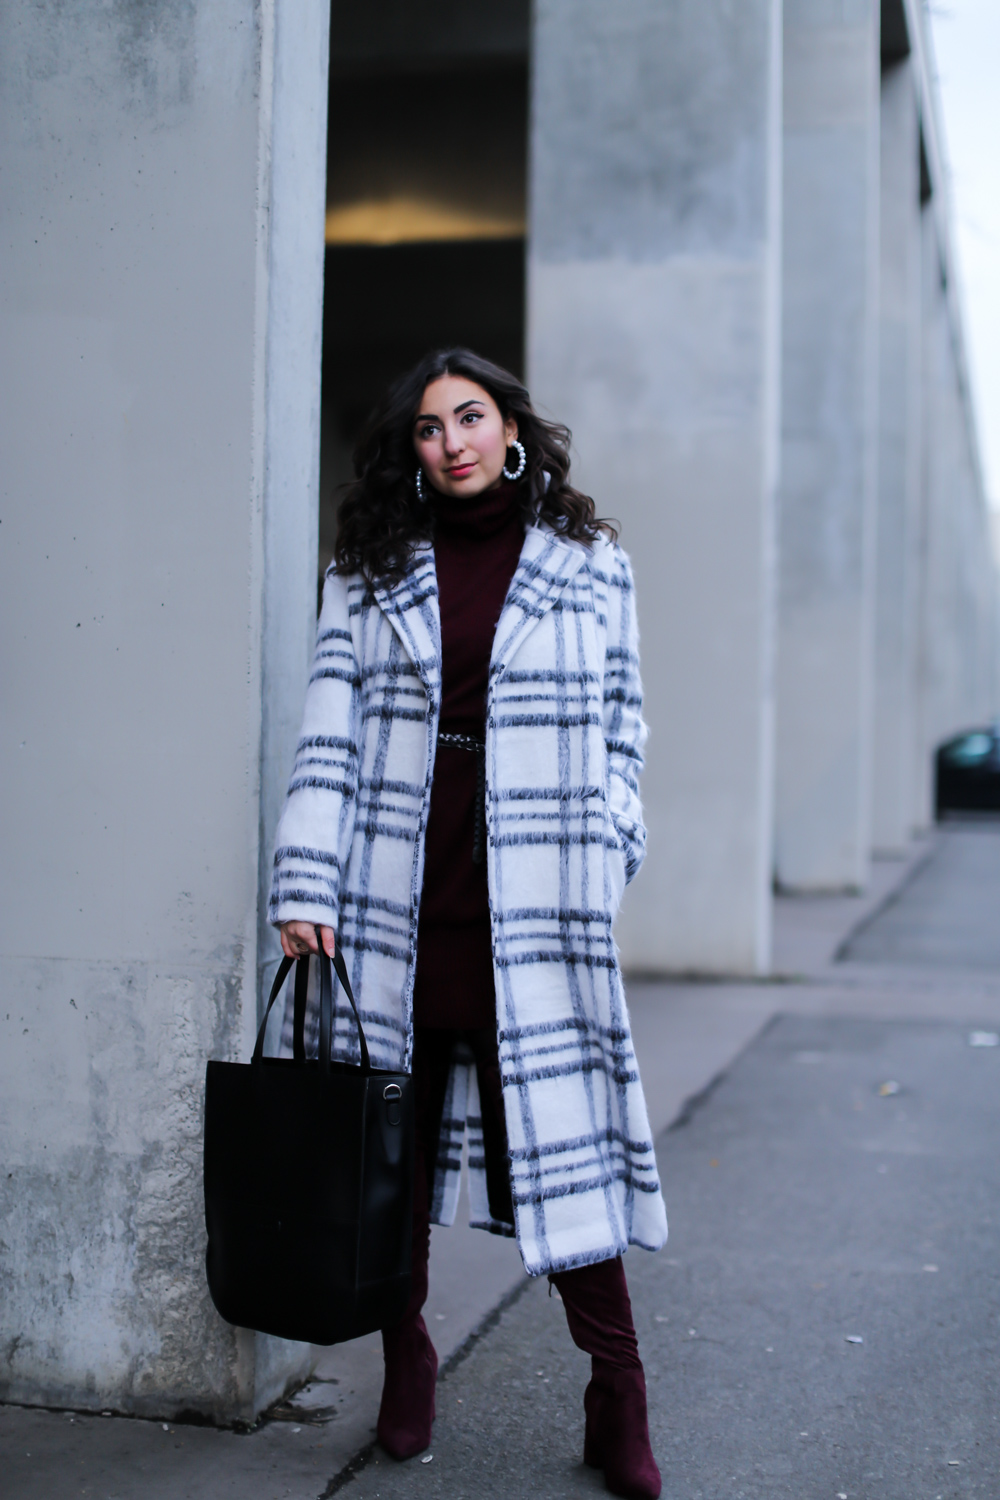 white coat outfit nakd oversize mantel burgundy knit dress overknees winter looke-39